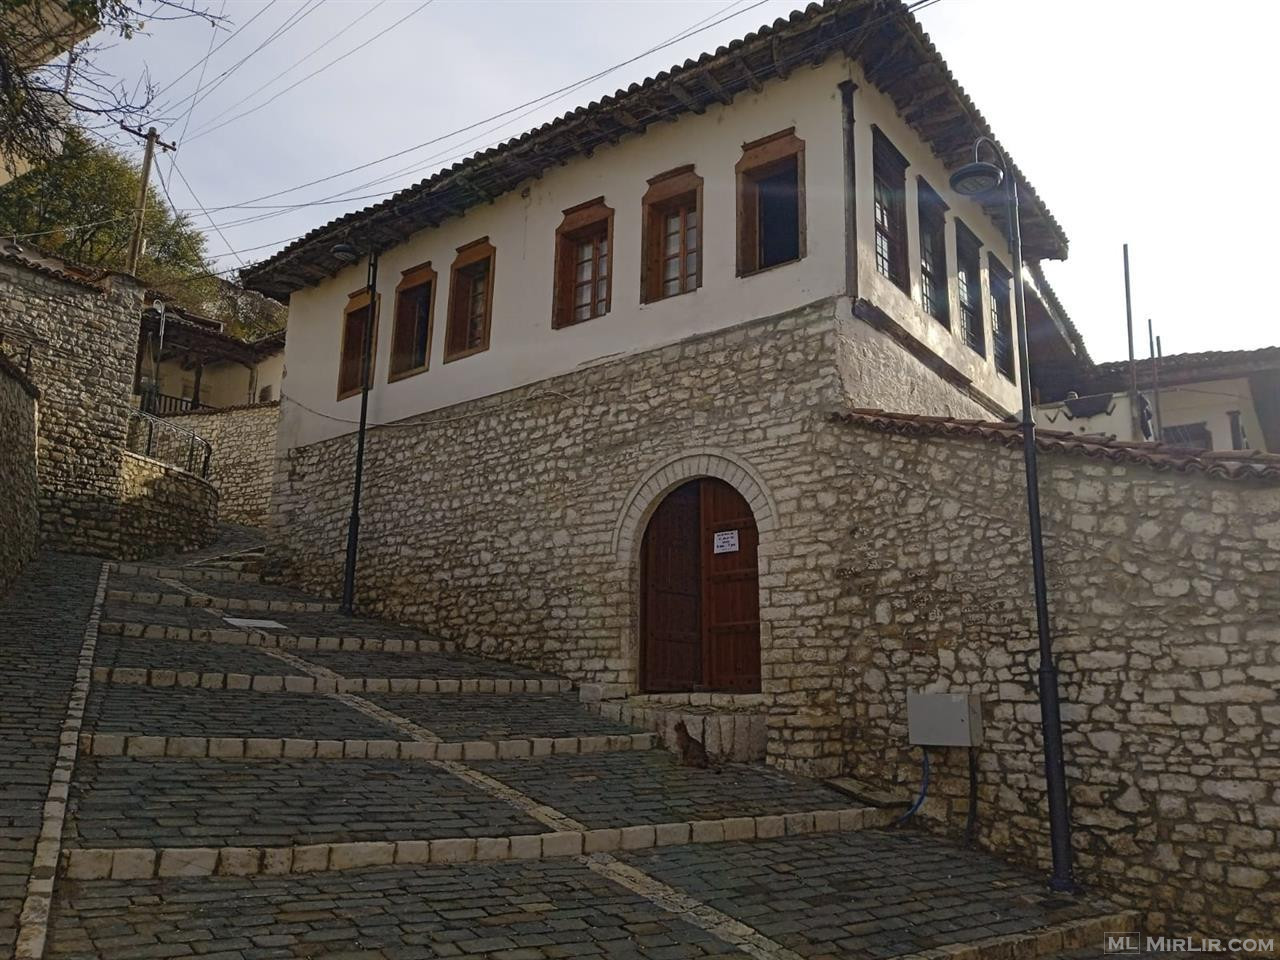 Shitet shtepia ngjitur me muzeun Berat